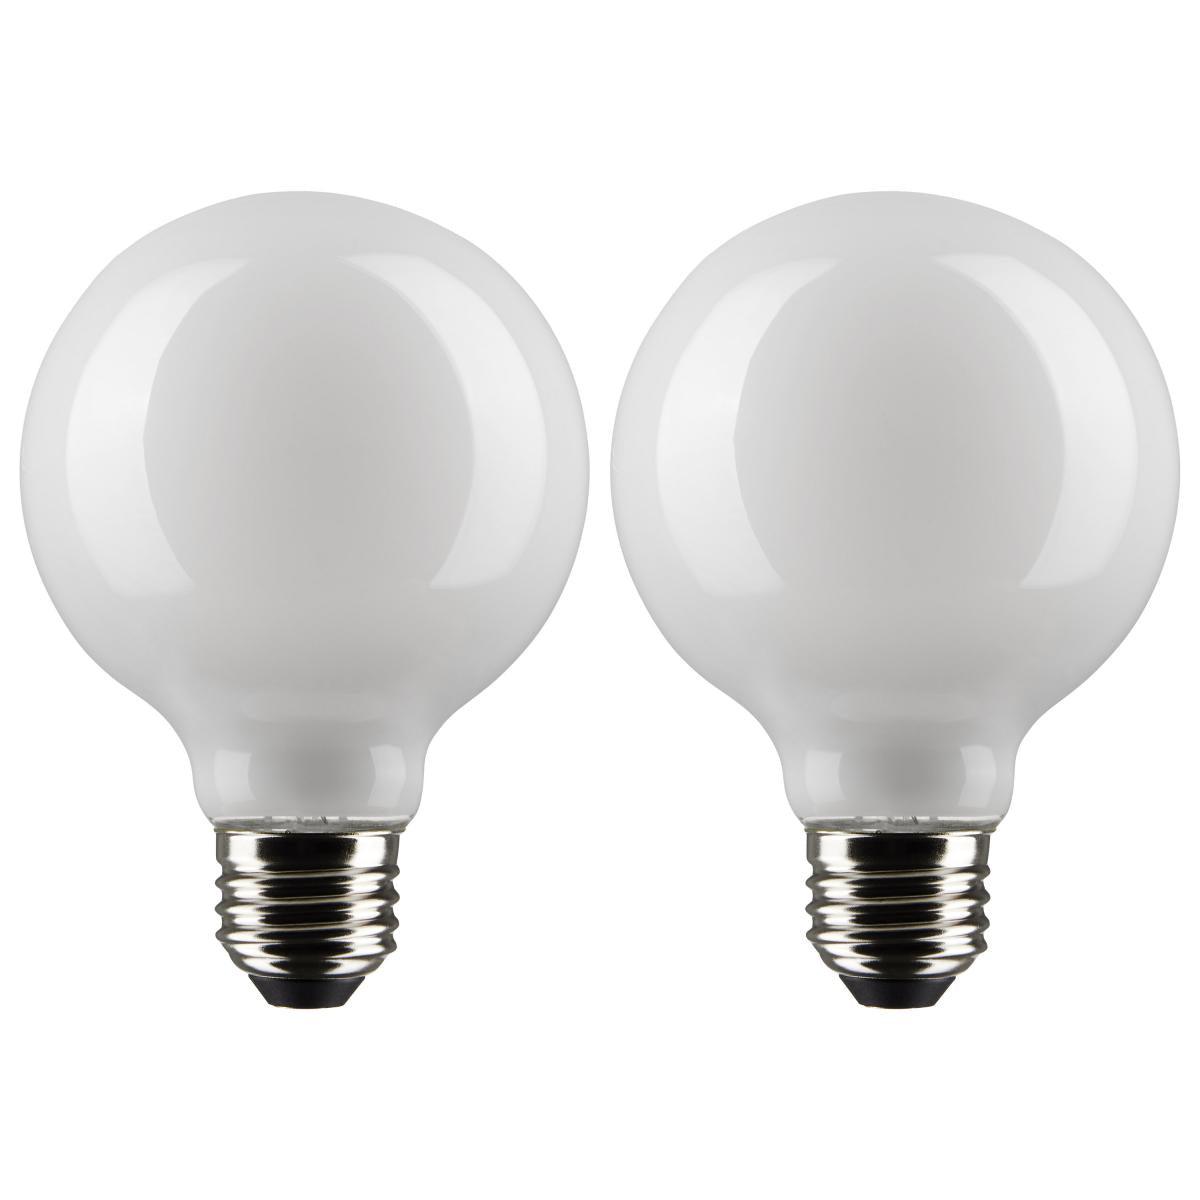 G25 LED Globe Bulb, 5 Watt, 350 Lumens, 2700K, E26 Medium Base, Frosted Finish, Pack Of 2 - Bees Lighting